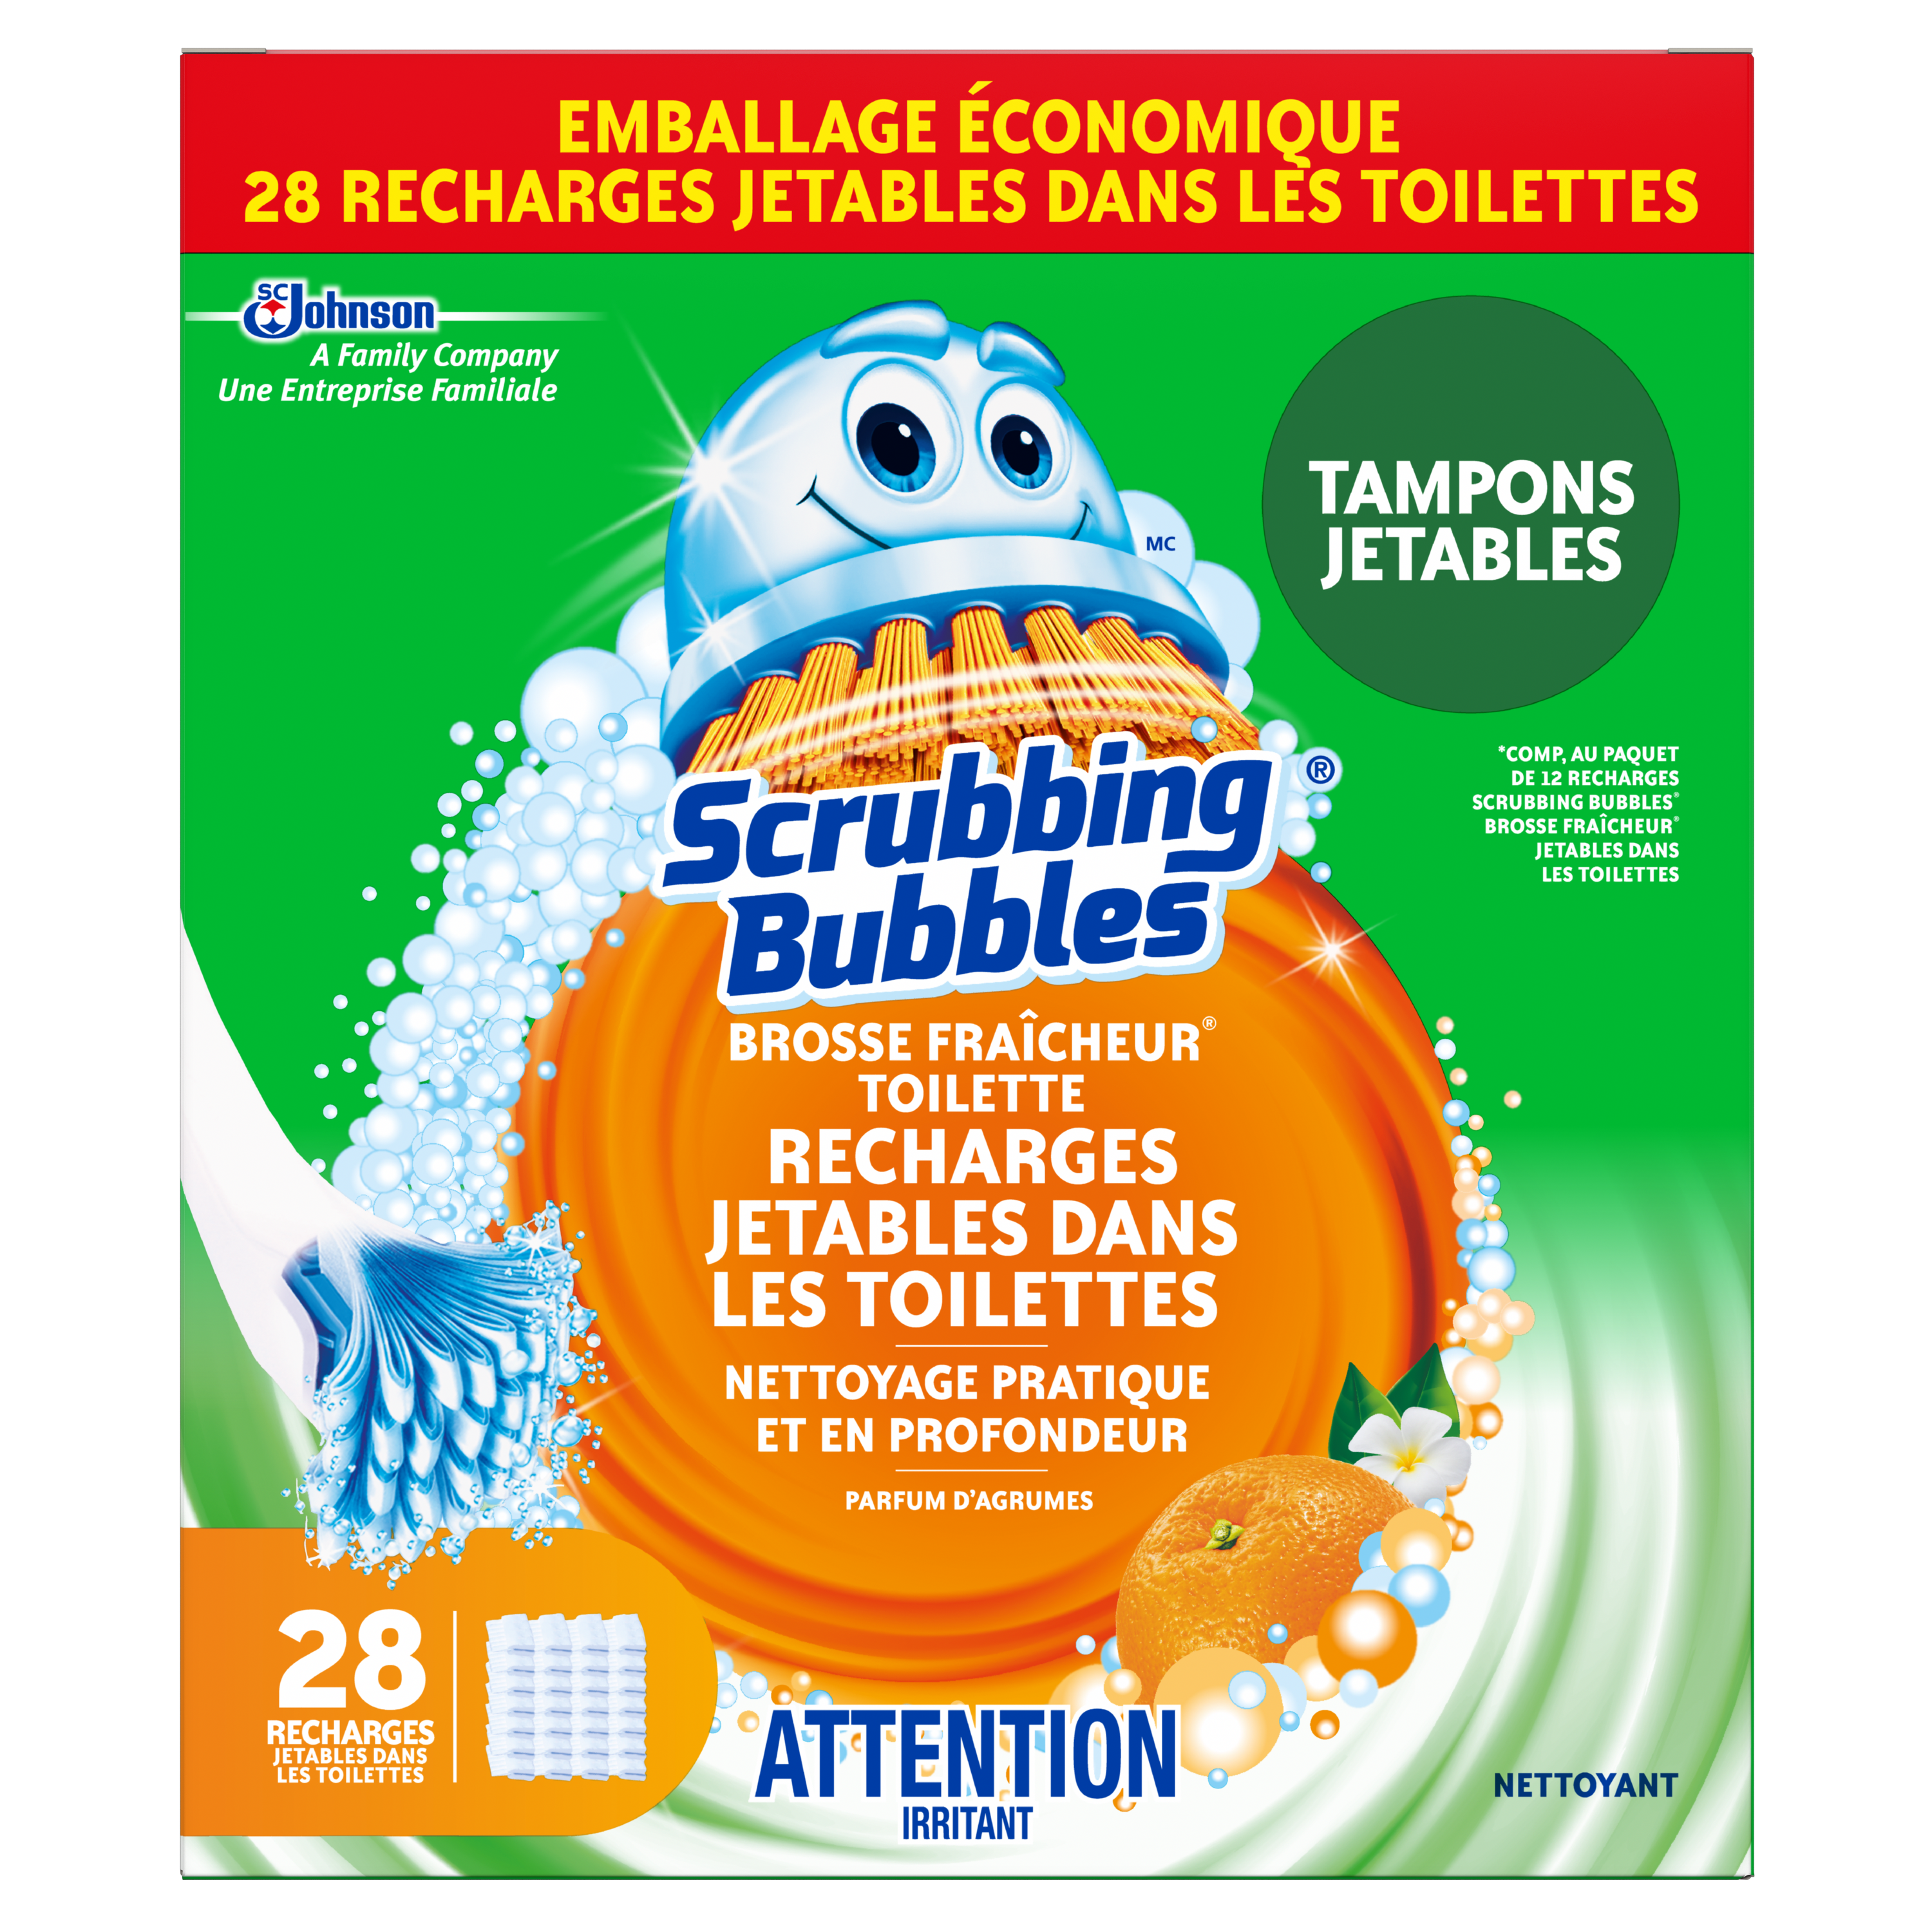 Scrubbing Bubbles® Brosse Fraîcheur® Toilette Recharges Jetables dans les Toilettes (value pack)